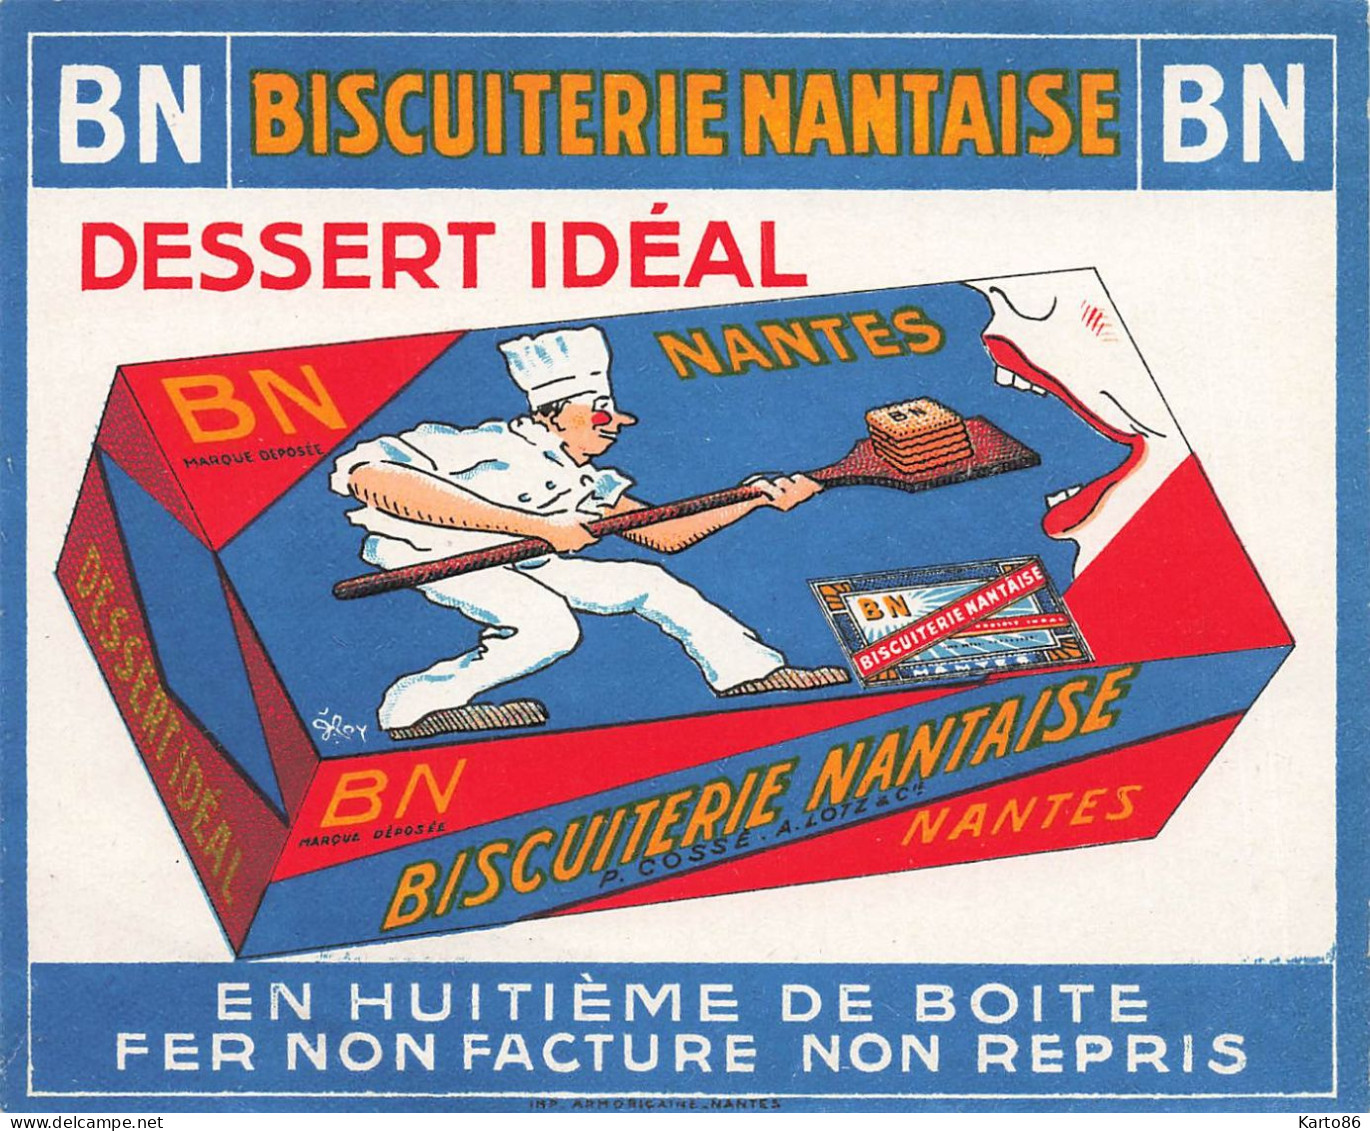 Nantes * Biscuiterie Nantaise BN Biscuits * Usine Industrie * Image Doc Publicitaire Ancien Illustré * 12x10cm - Nantes